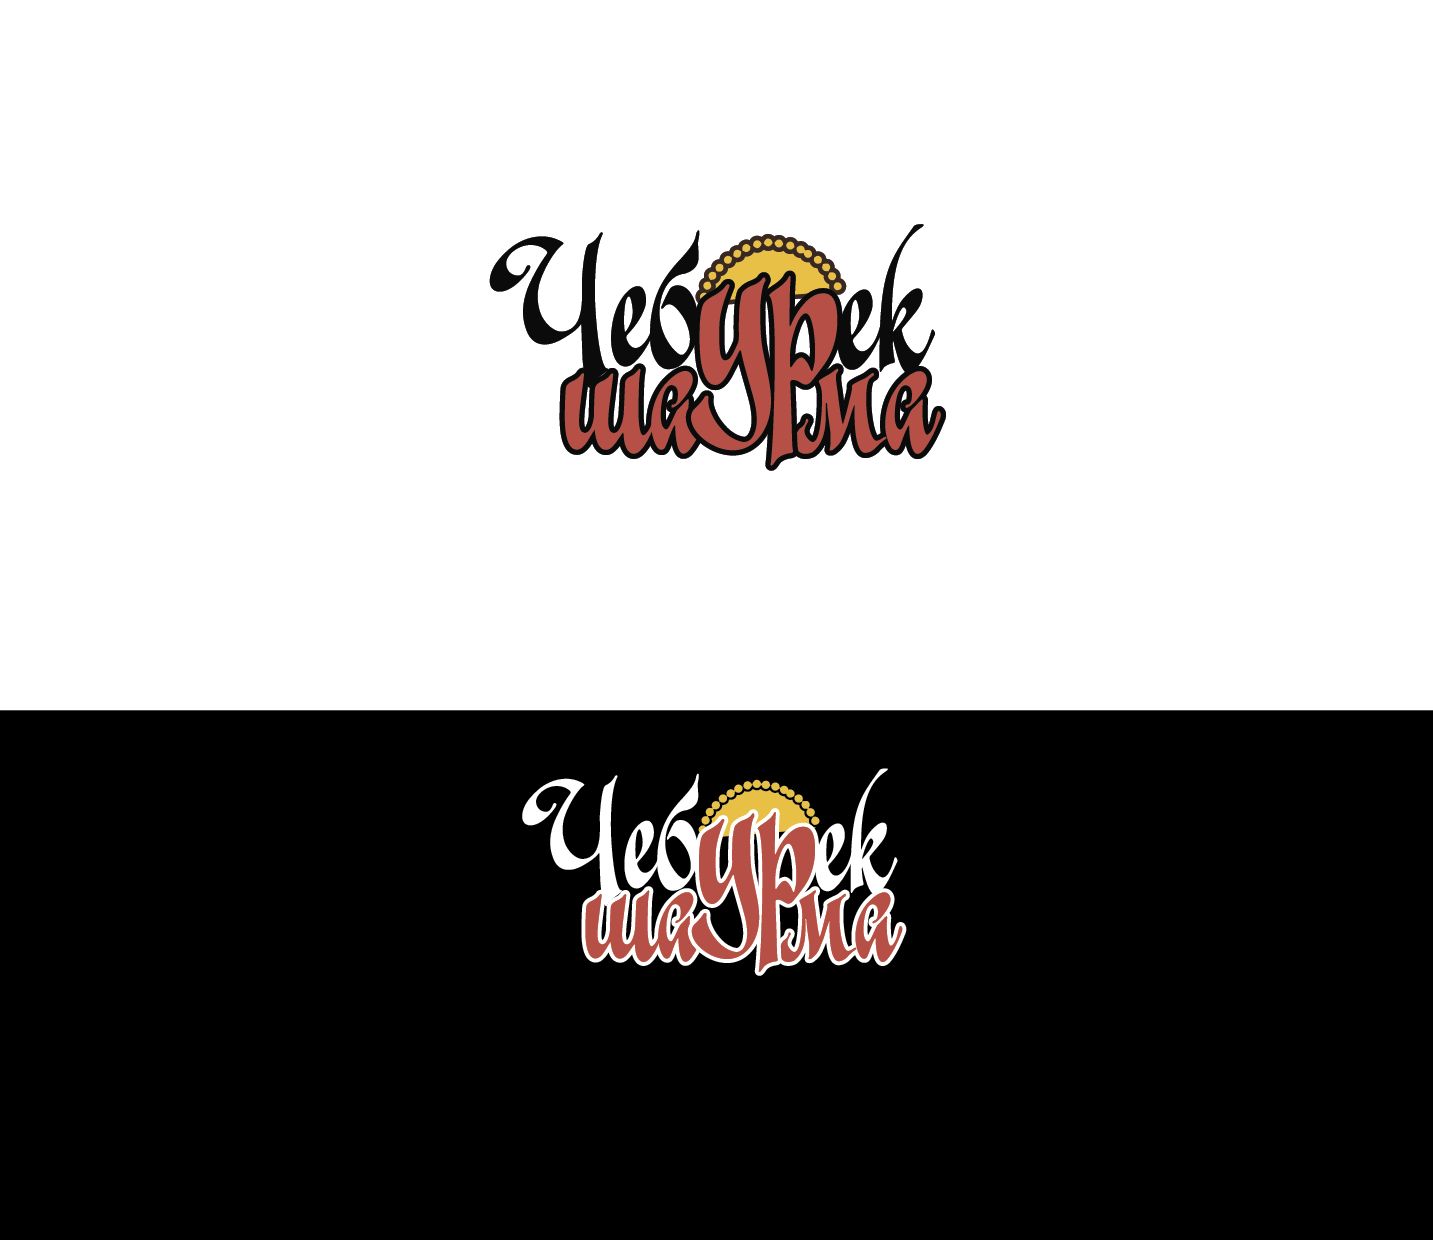 Логотип для Чебурек & Шаурма  - дизайнер v-i-p-style